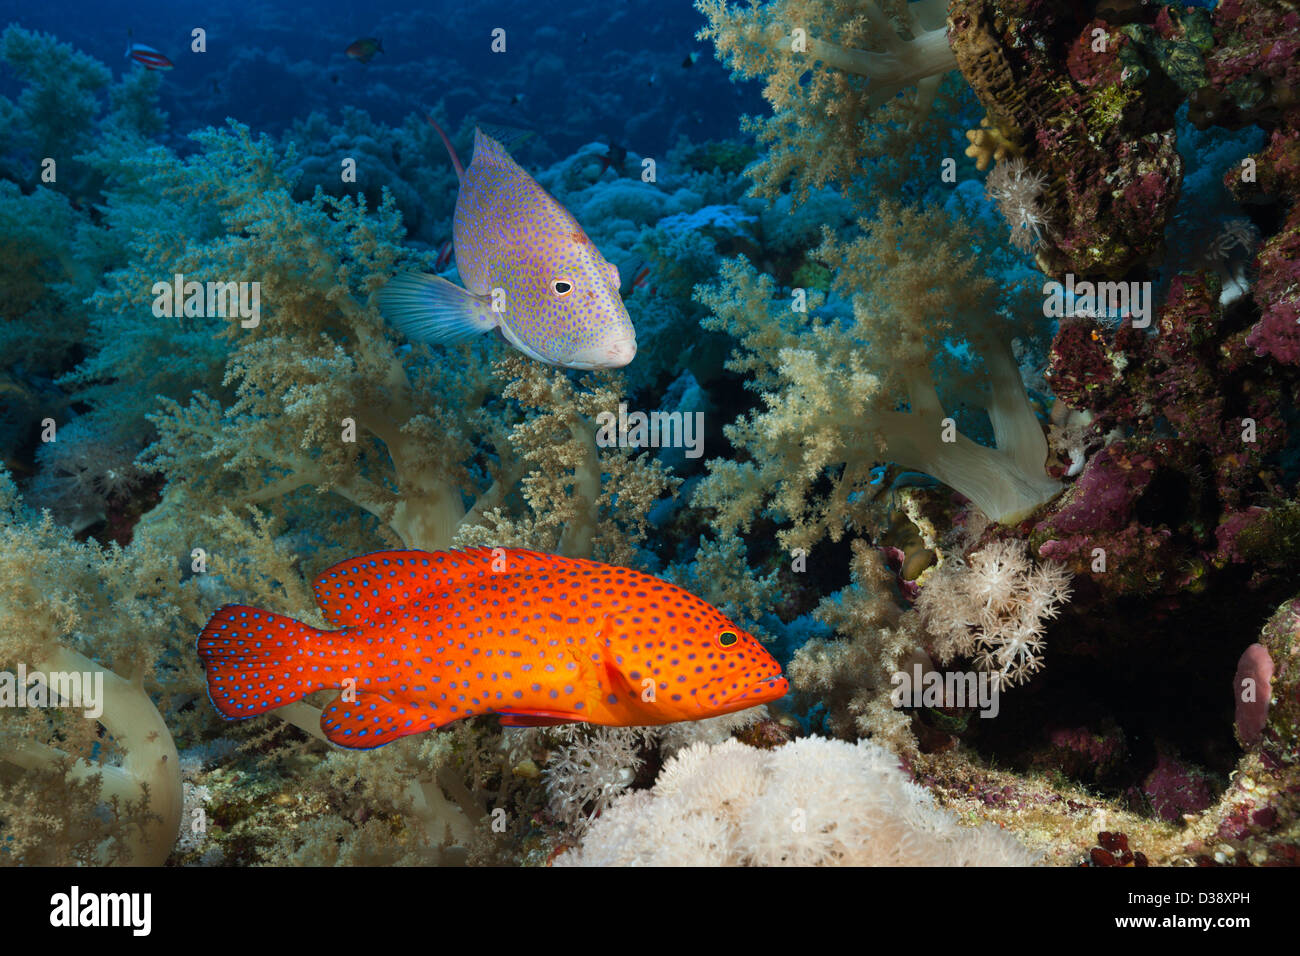 Coral Grouper and Lyretail Grouper, Cephalopholis miniata, Elphinstone, Red Sea, Egypt Stock Photo